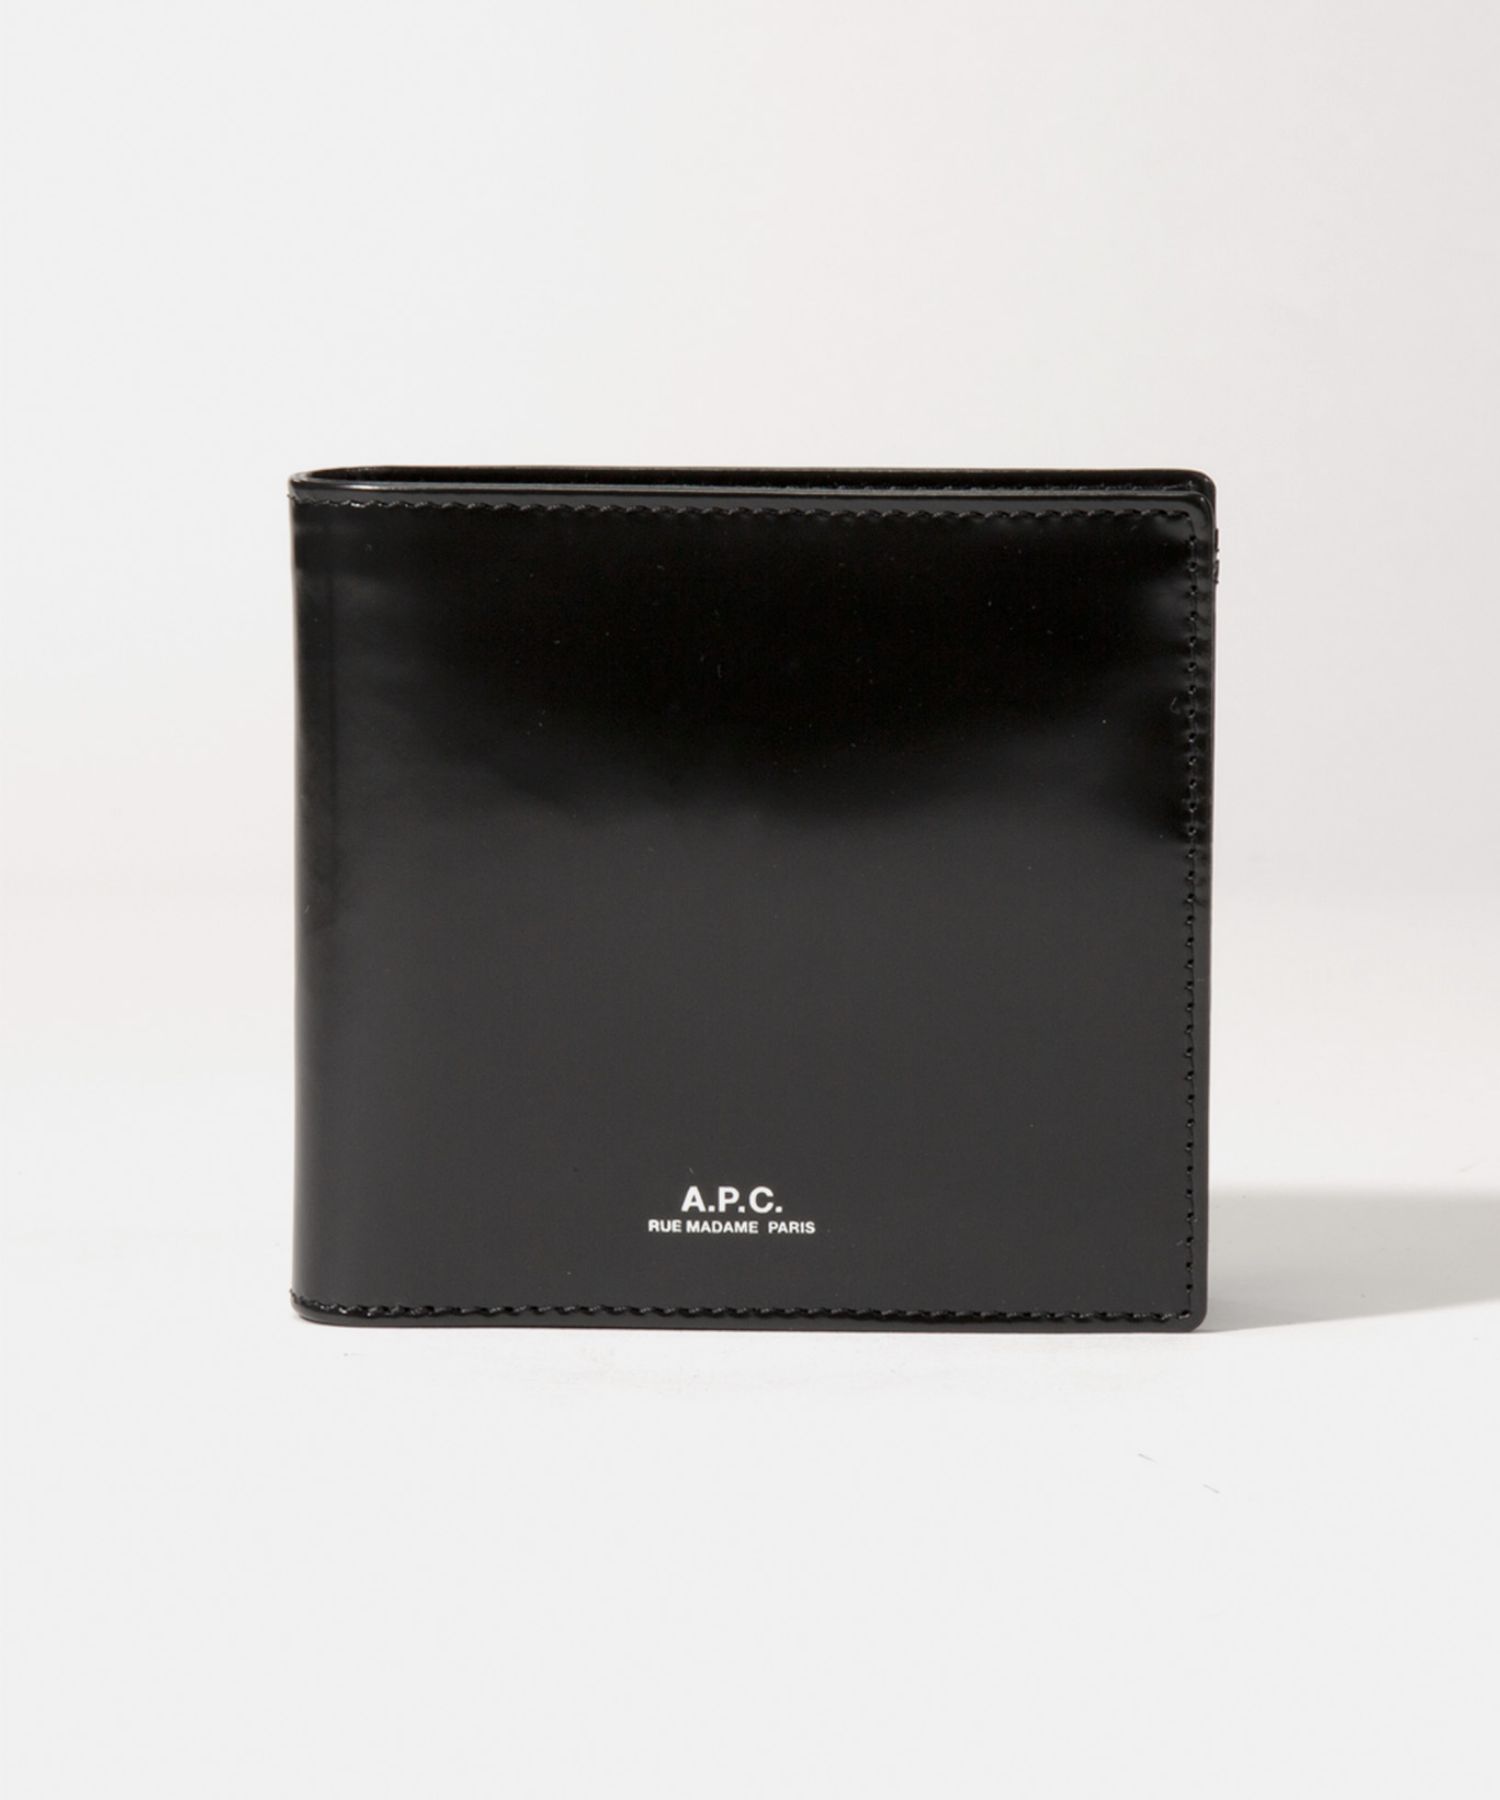 メンズファッション 財布、帽子、ファッション小物 楽天市場】APC アーペーセー A.P.C. PXBRS H63340 二つ折り財布 メンズ 